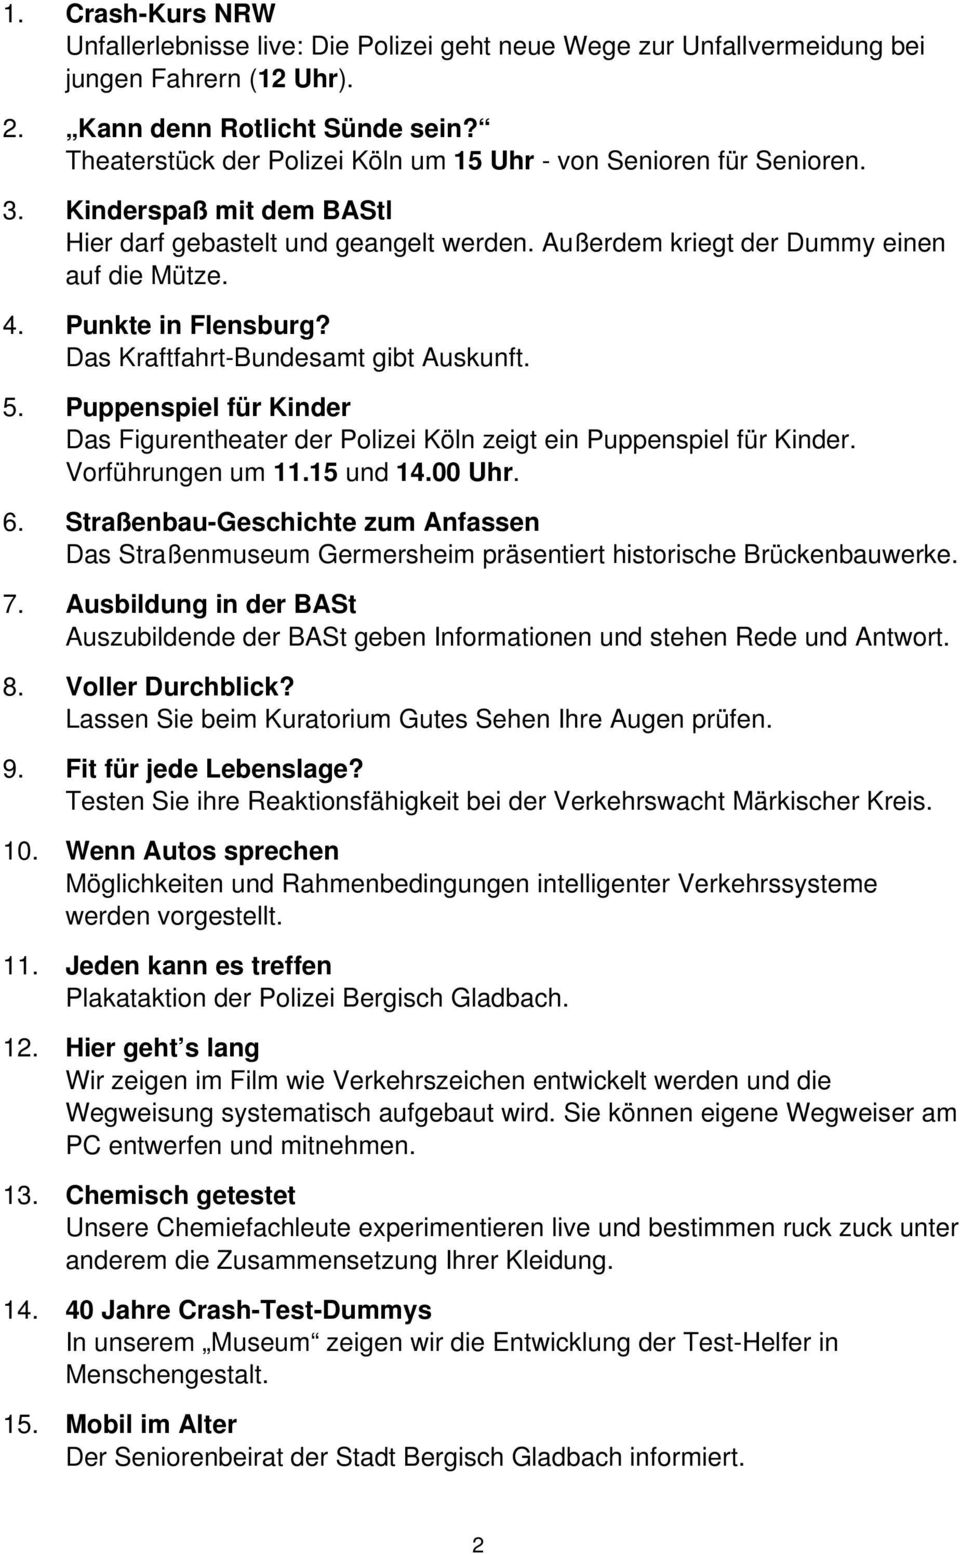 Punkte in Flensburg? Das Kraftfahrt-Bundesamt gibt Auskunft. 5. Puppenspiel für Kinder Das Figurentheater der Polizei Köln zeigt ein Puppenspiel für Kinder. Vorführungen um 11.15 und 14.00 Uhr. 6.